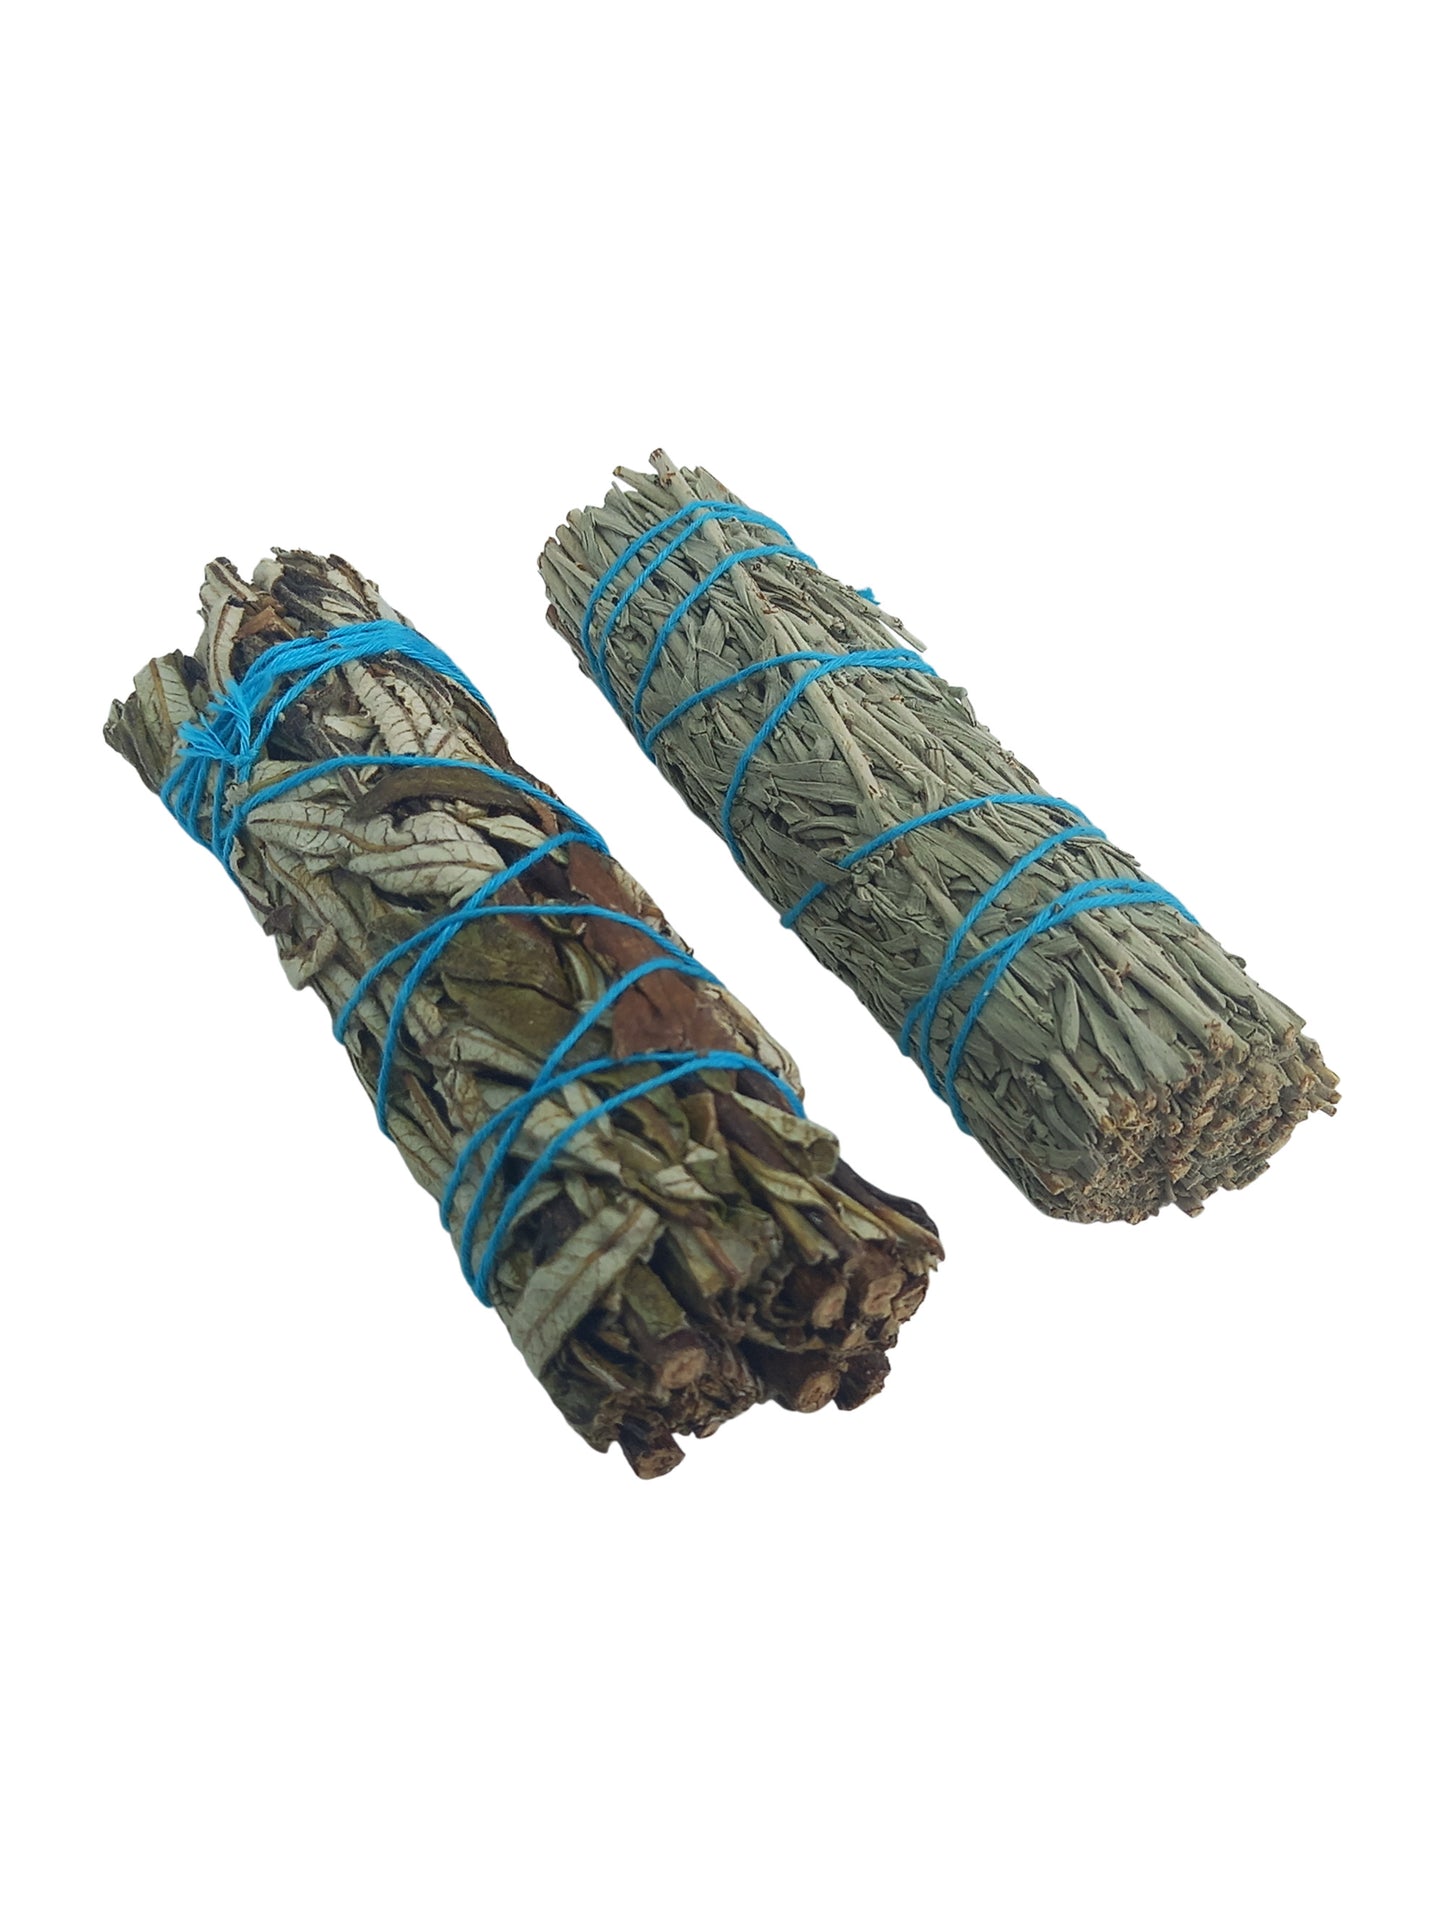 Blue Sage plus Yerba Santa Smudge Sticks